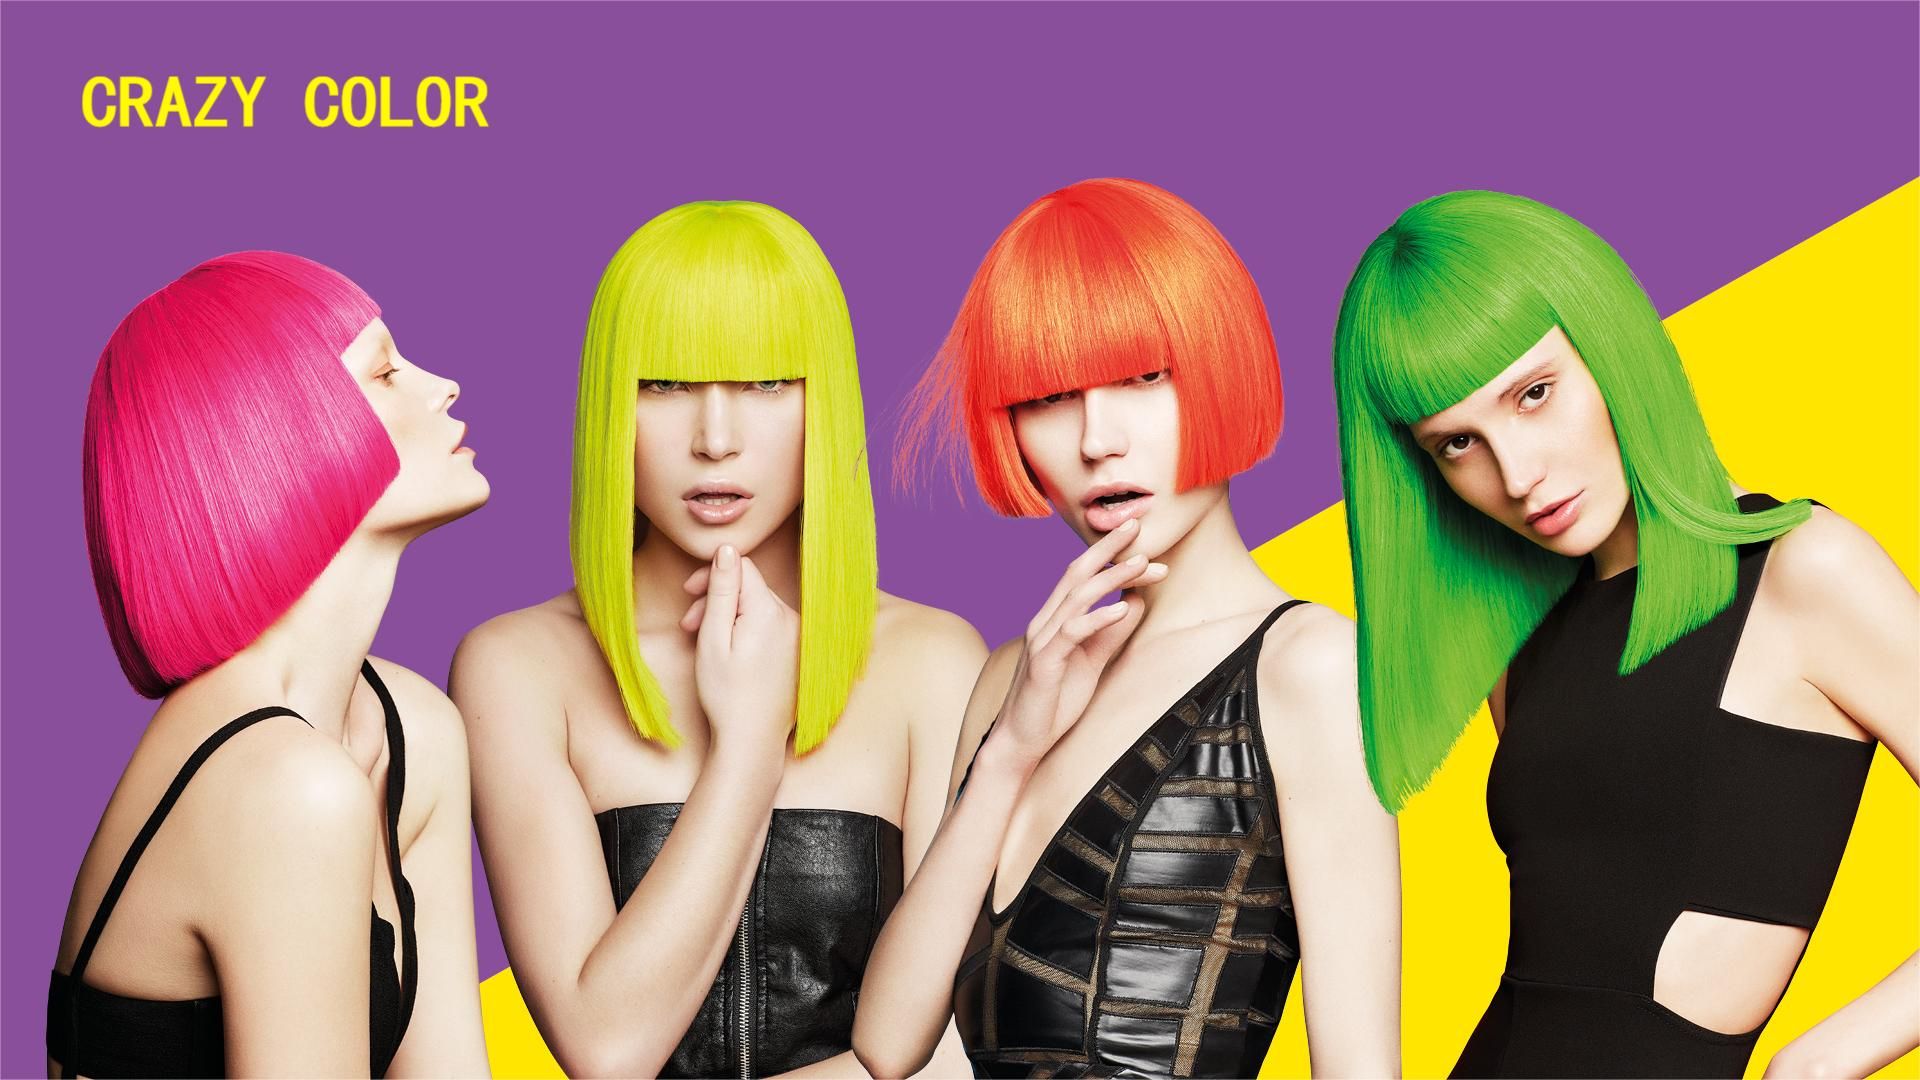 Perché comprare i Crazy Color per dipingere i tuoi capelli?